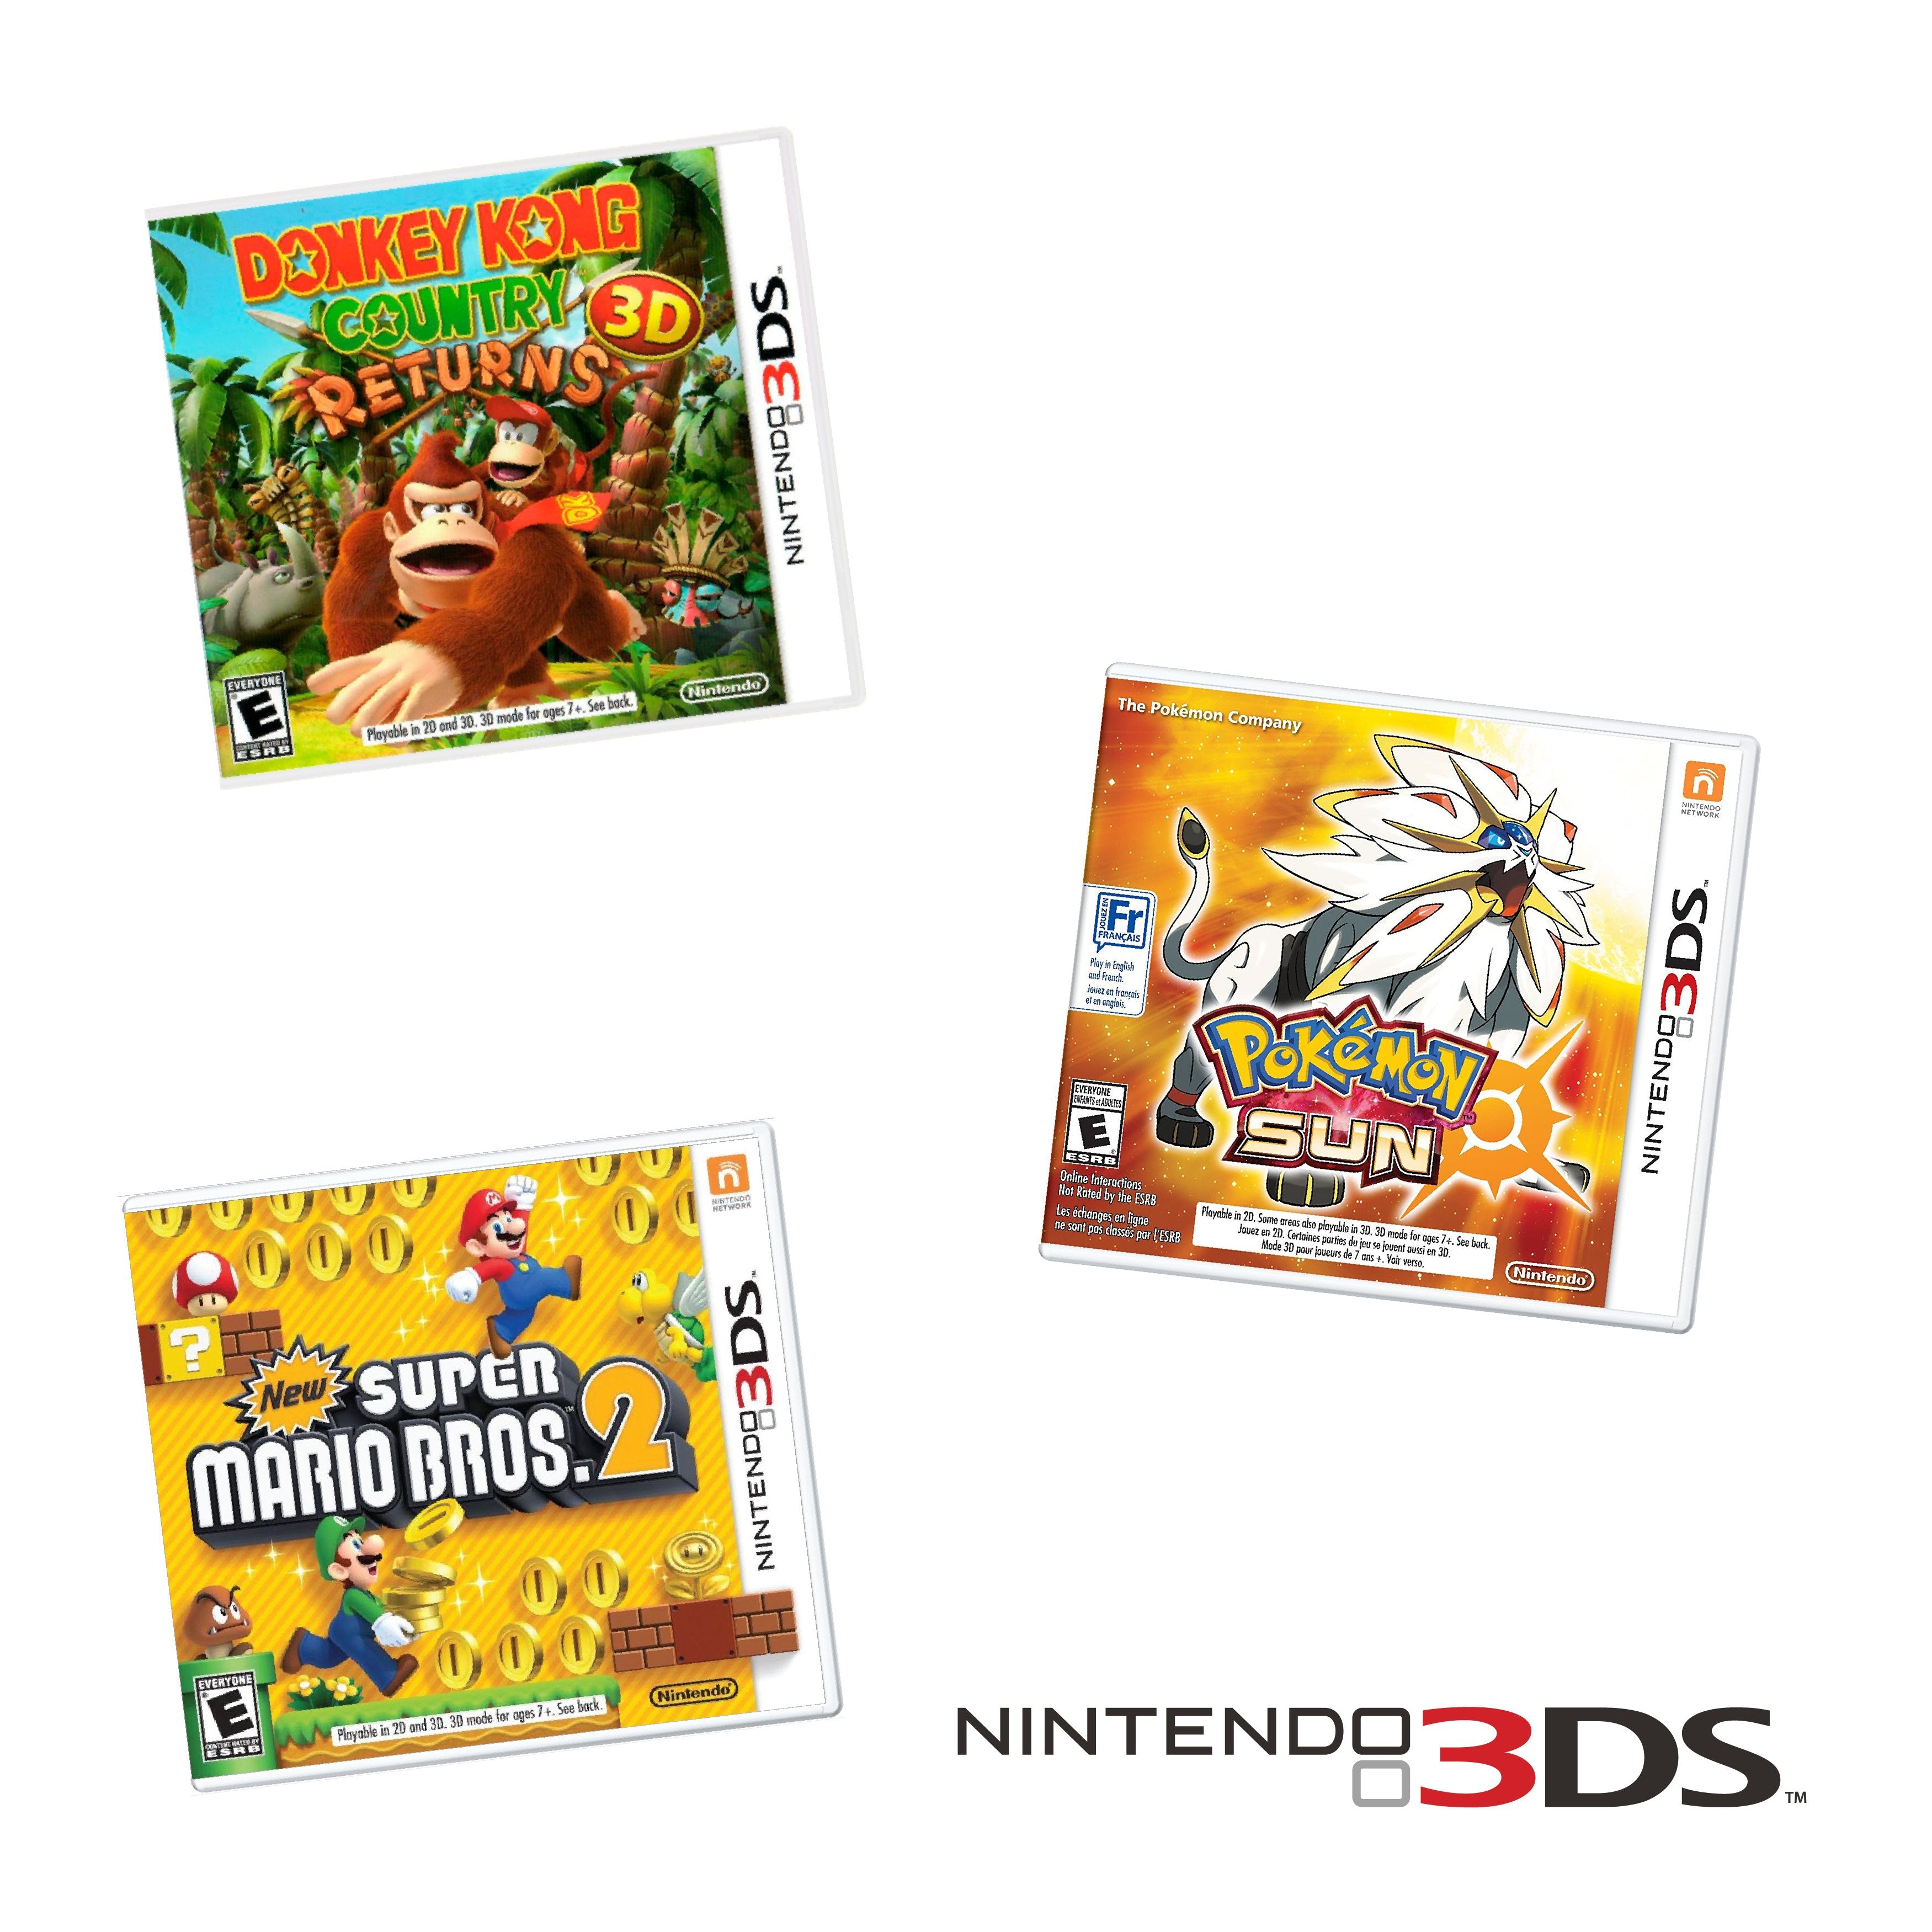 Shop Nintendo 3DS Video Games